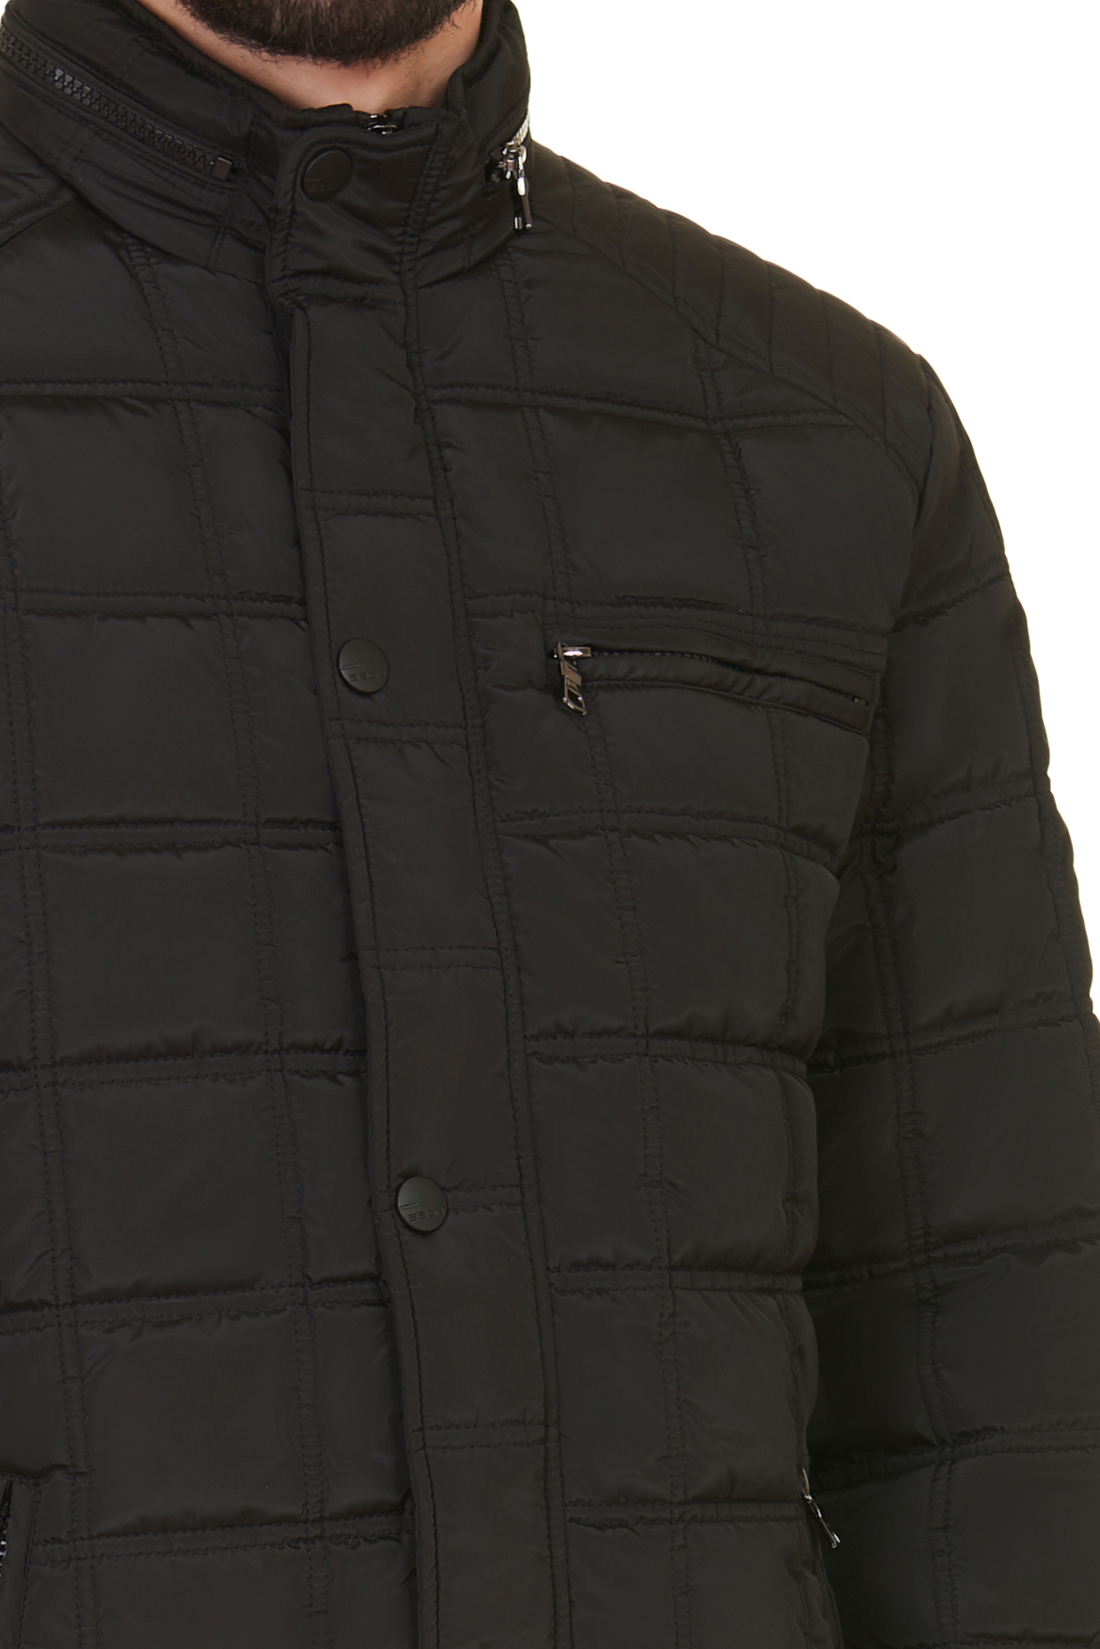 Куртка в байкерском стиле (арт. baon B537549), размер L, цвет черный Куртка в байкерском стиле (арт. baon B537549) - фото 4